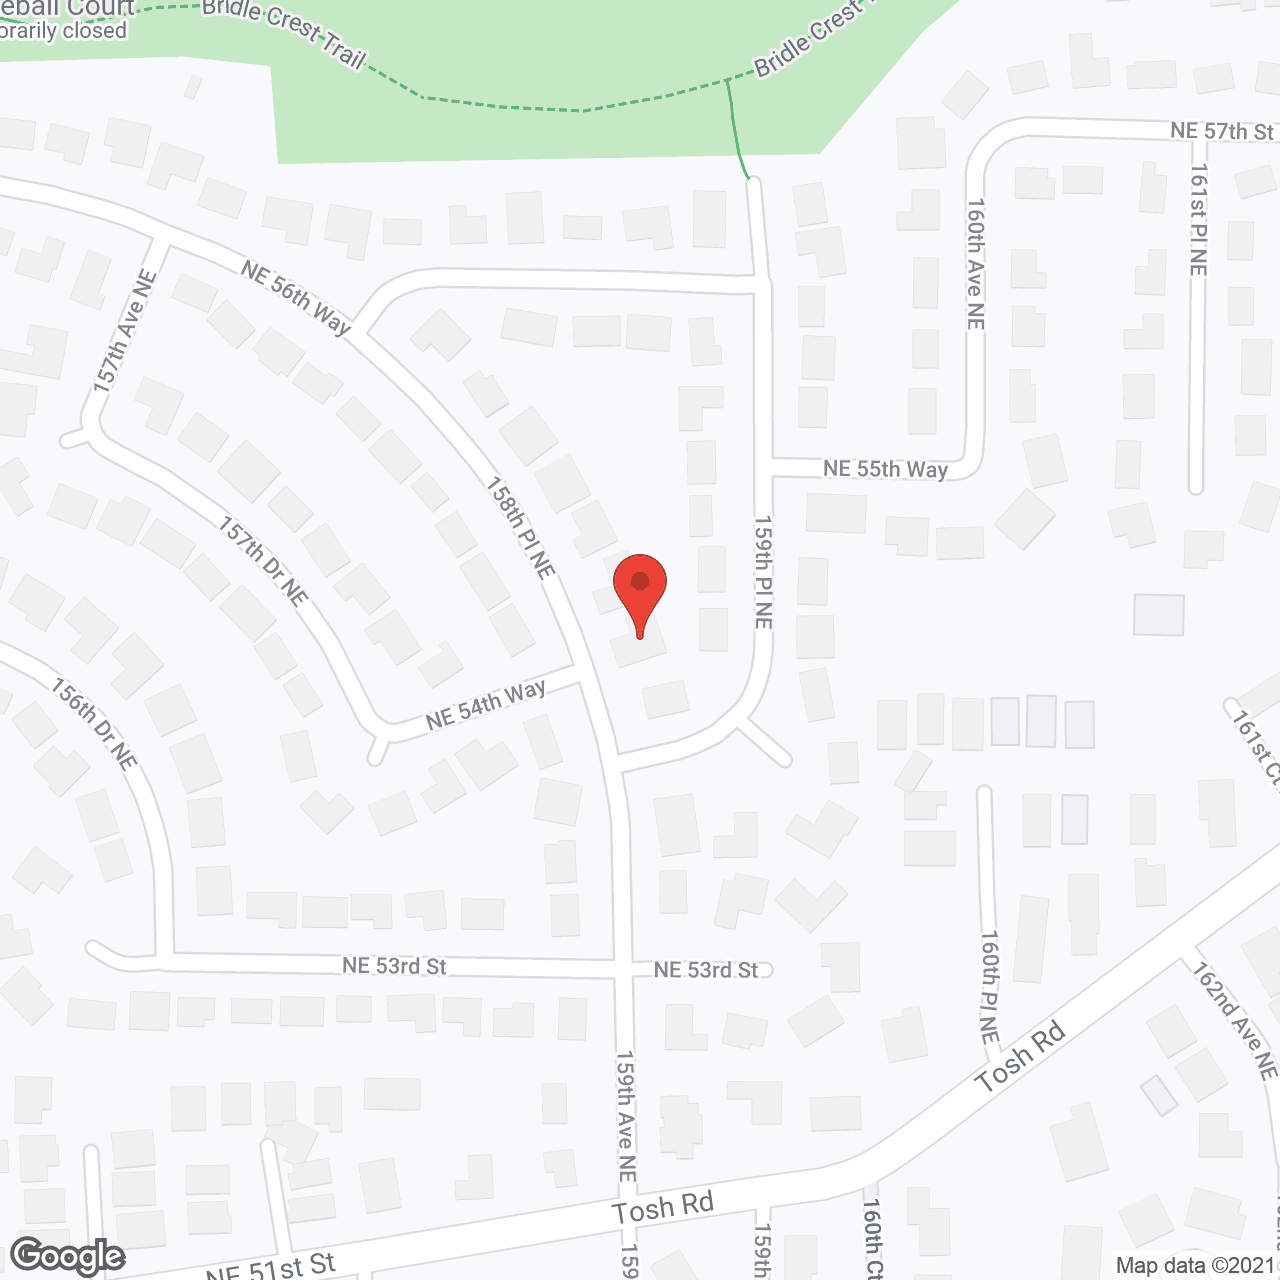 Viewridge Eastside Corp in google map